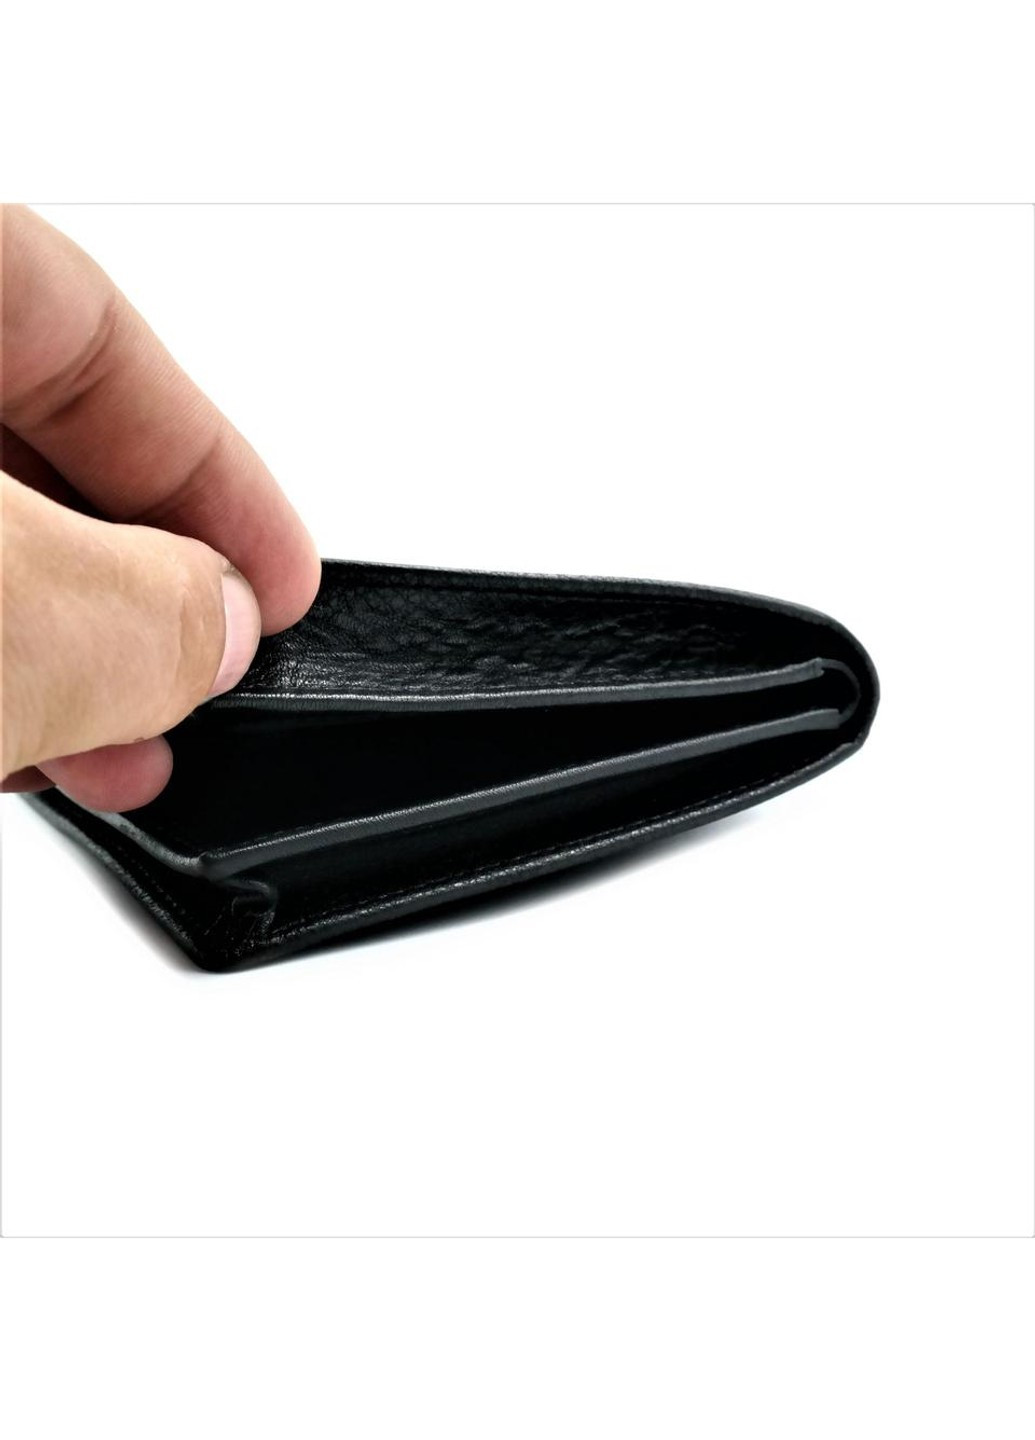 Чоловічий шкіряний гаманець 11 х 10 х 2,5 см Чорний wtro-408 Weatro (272950027)